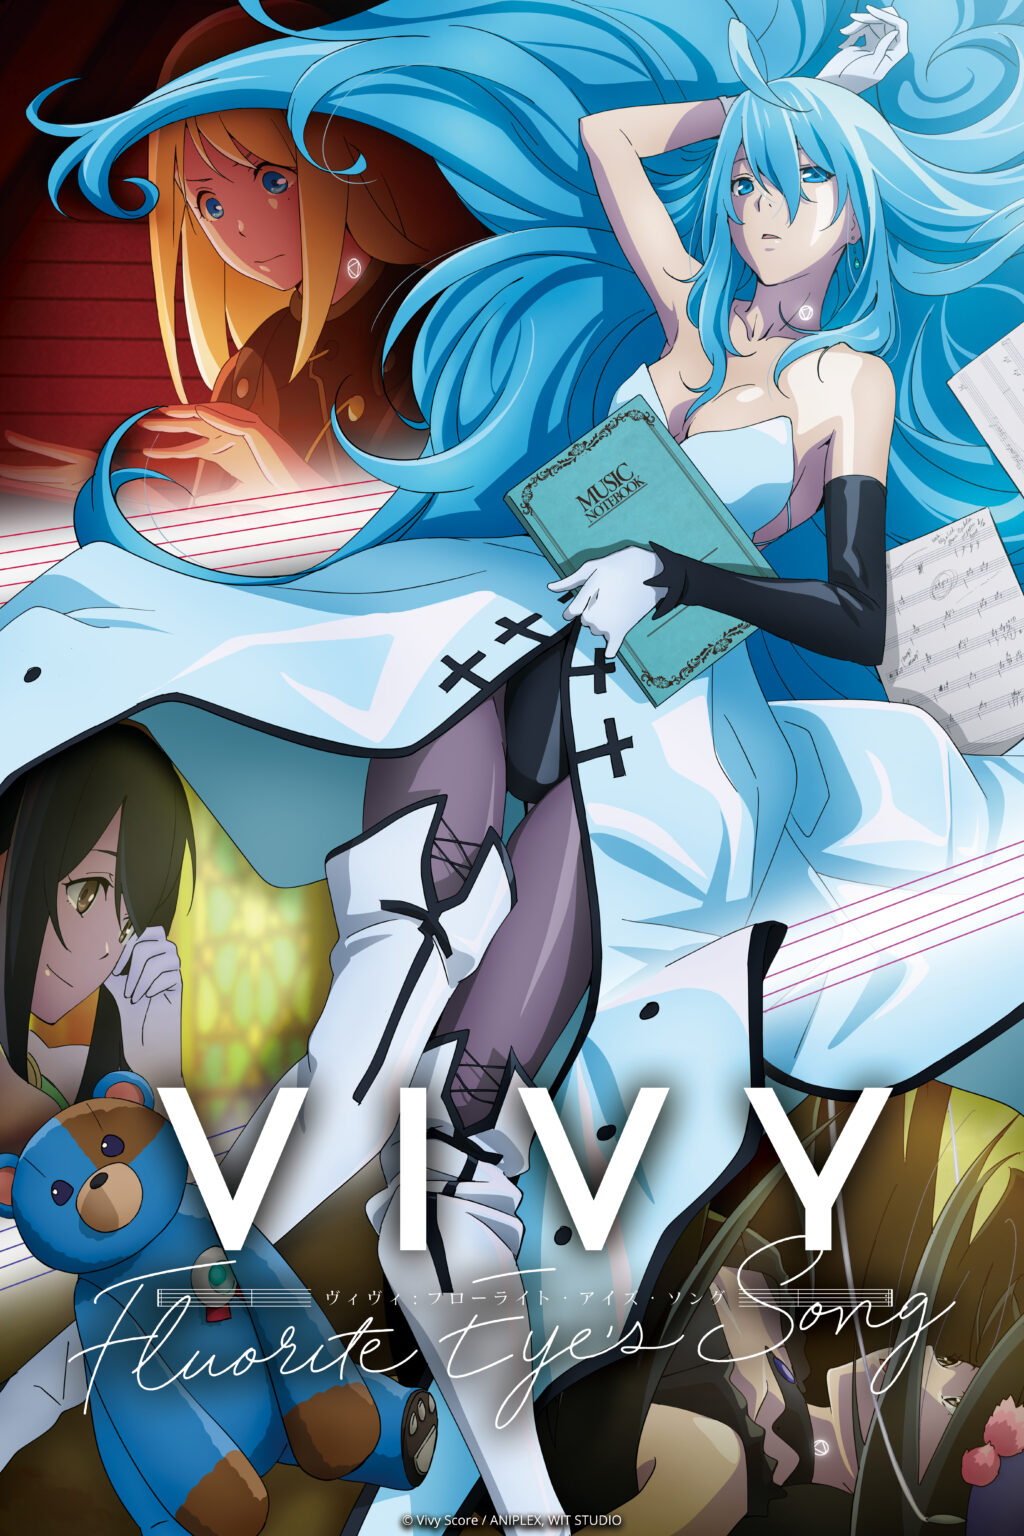 Vivy: Fluorite Eye's Song (Anime) - TV Tropes